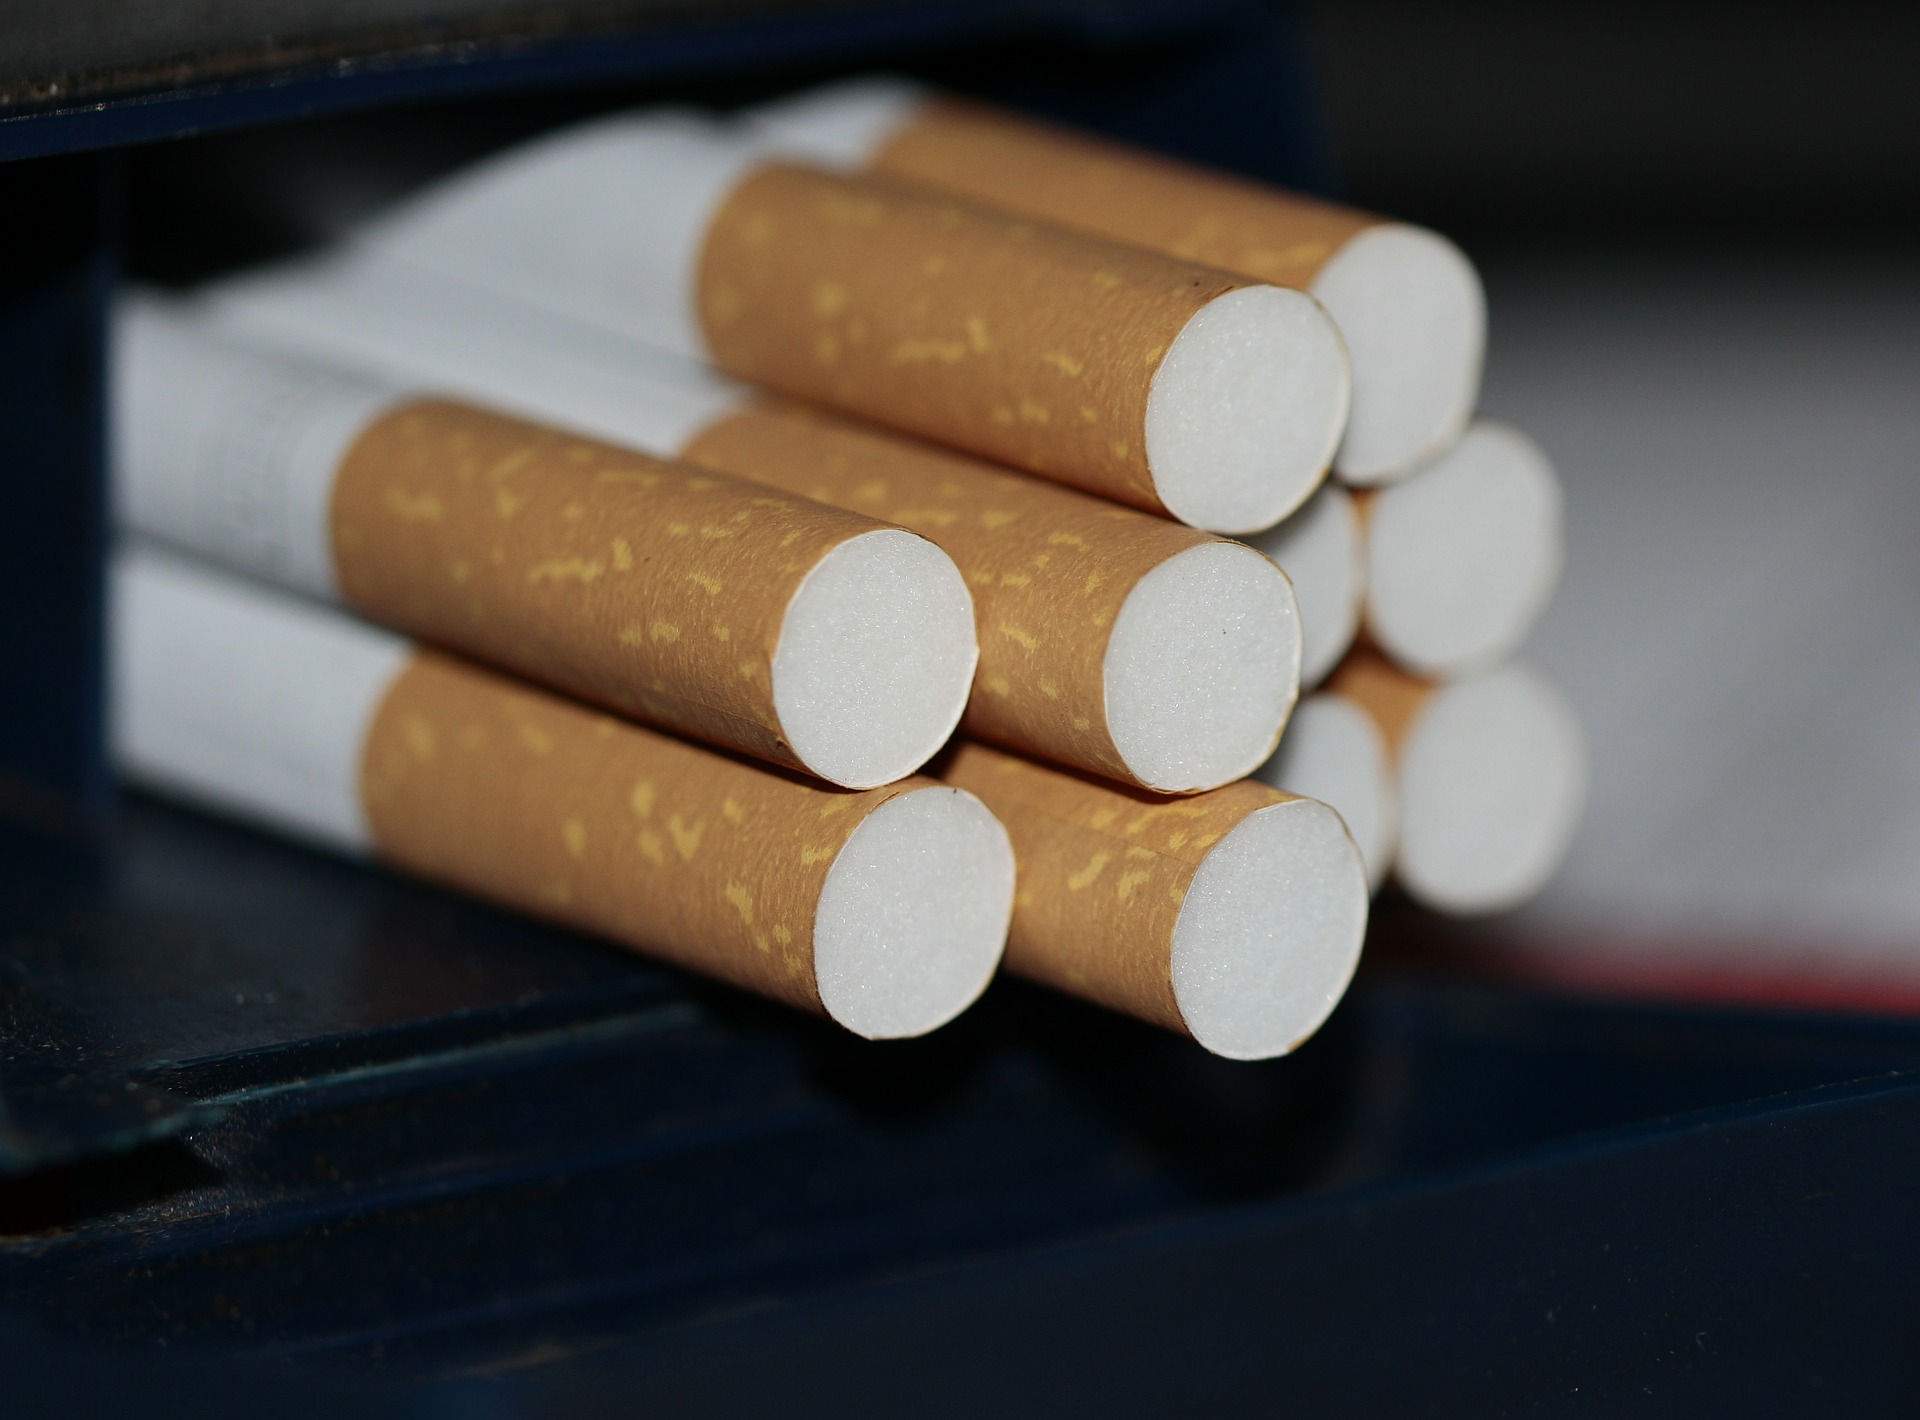 Nielegalna fabryka wyrobów tytoniowych zlikwidowana. Policja zabezpieczyła 1,4 mln zł w gotówce i aresztowała 11 osób